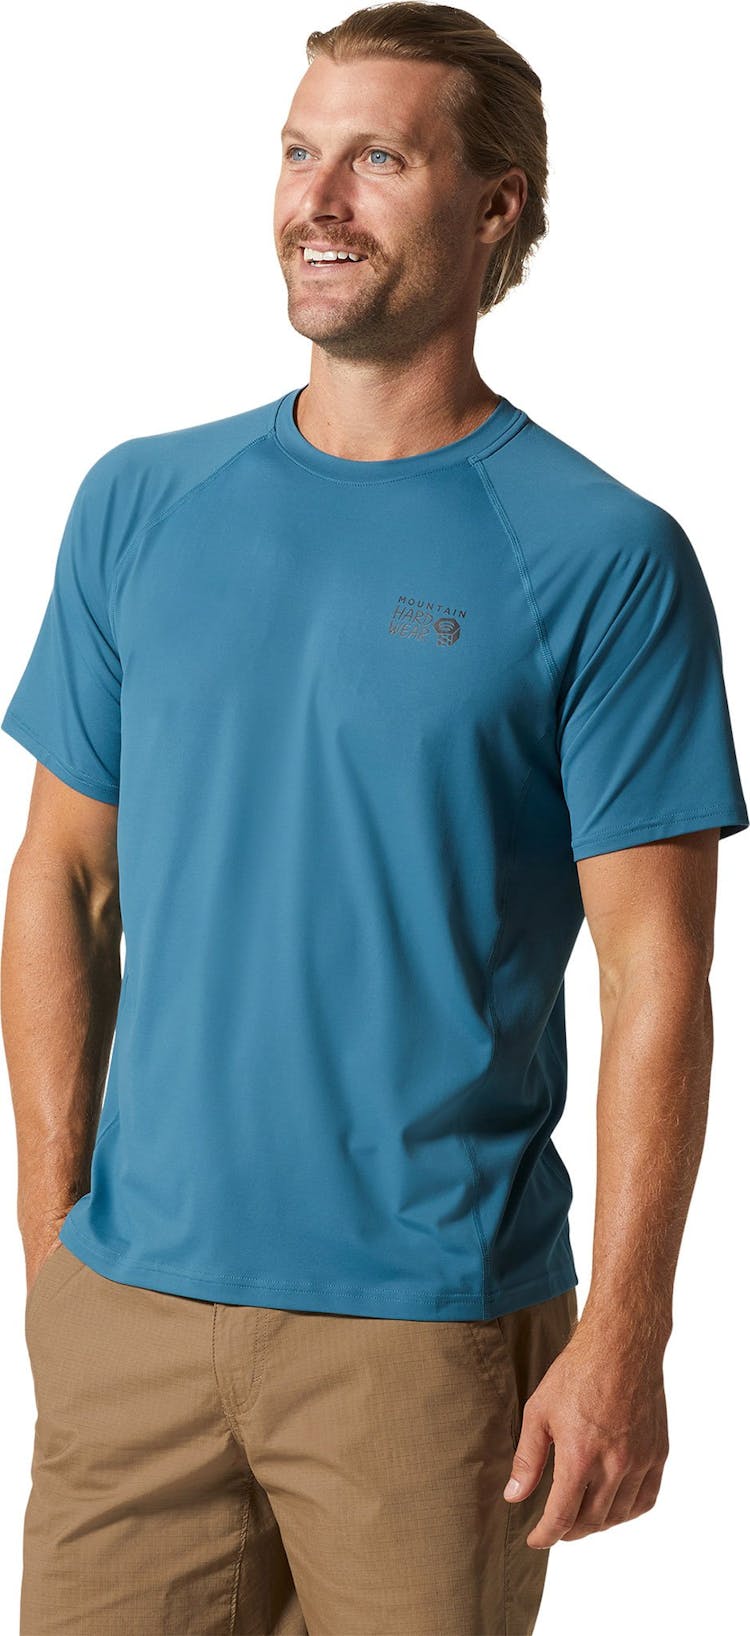 Numéro de l'image de la galerie de produits 4 pour le produit T-shirt à manches courtes de Crater Lake™ - Homme